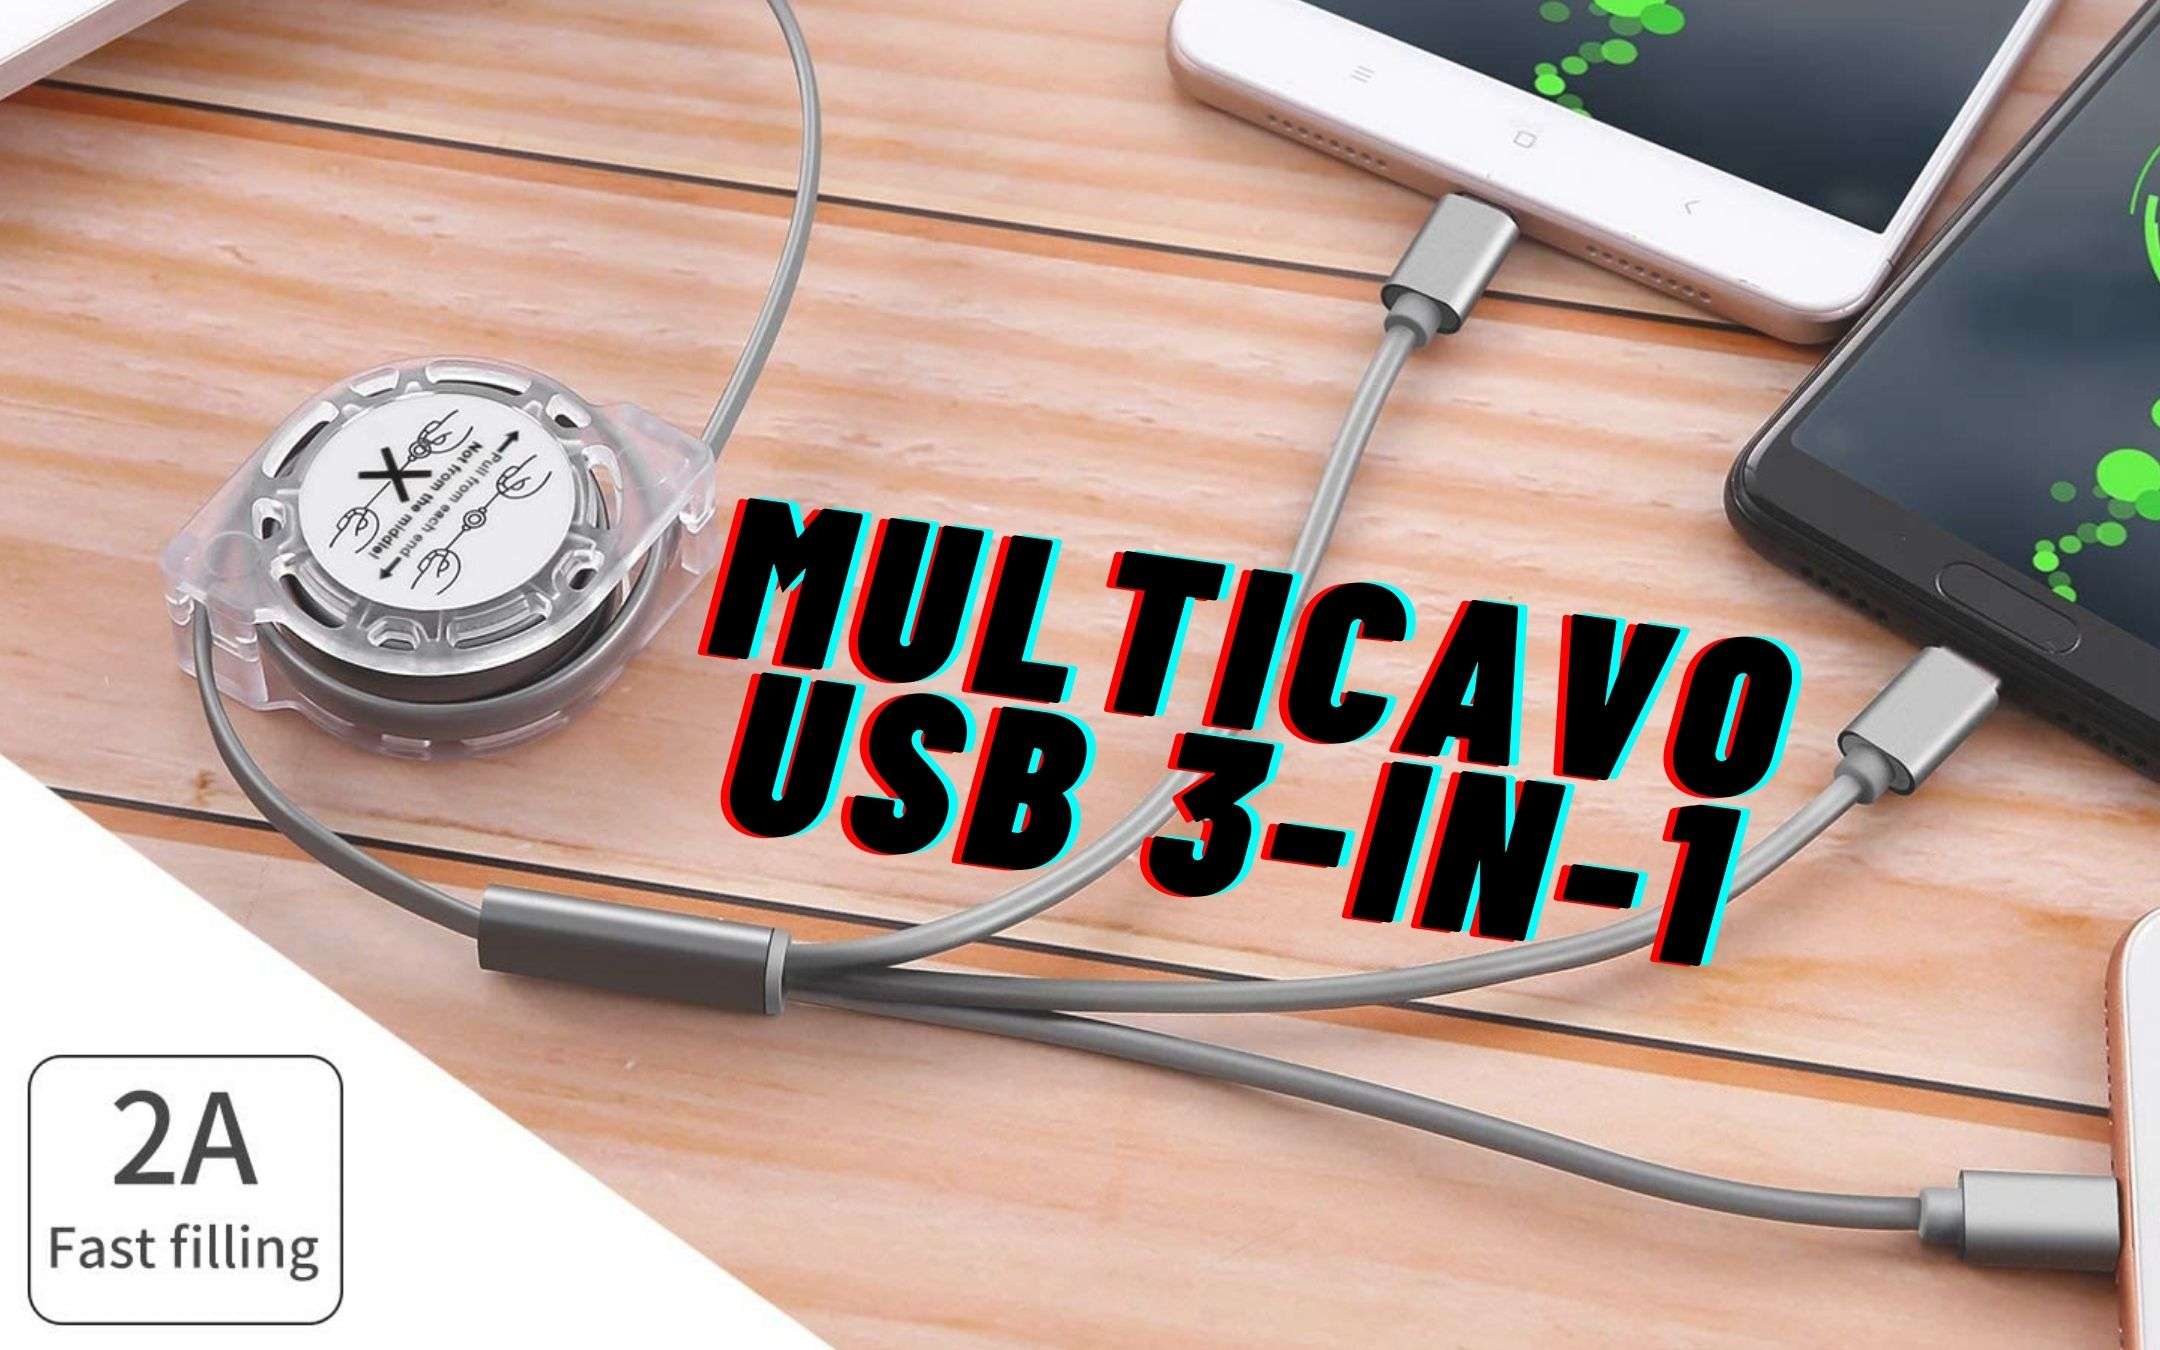 Multicavo 3-in-1 USB retrattile a meno di 10€